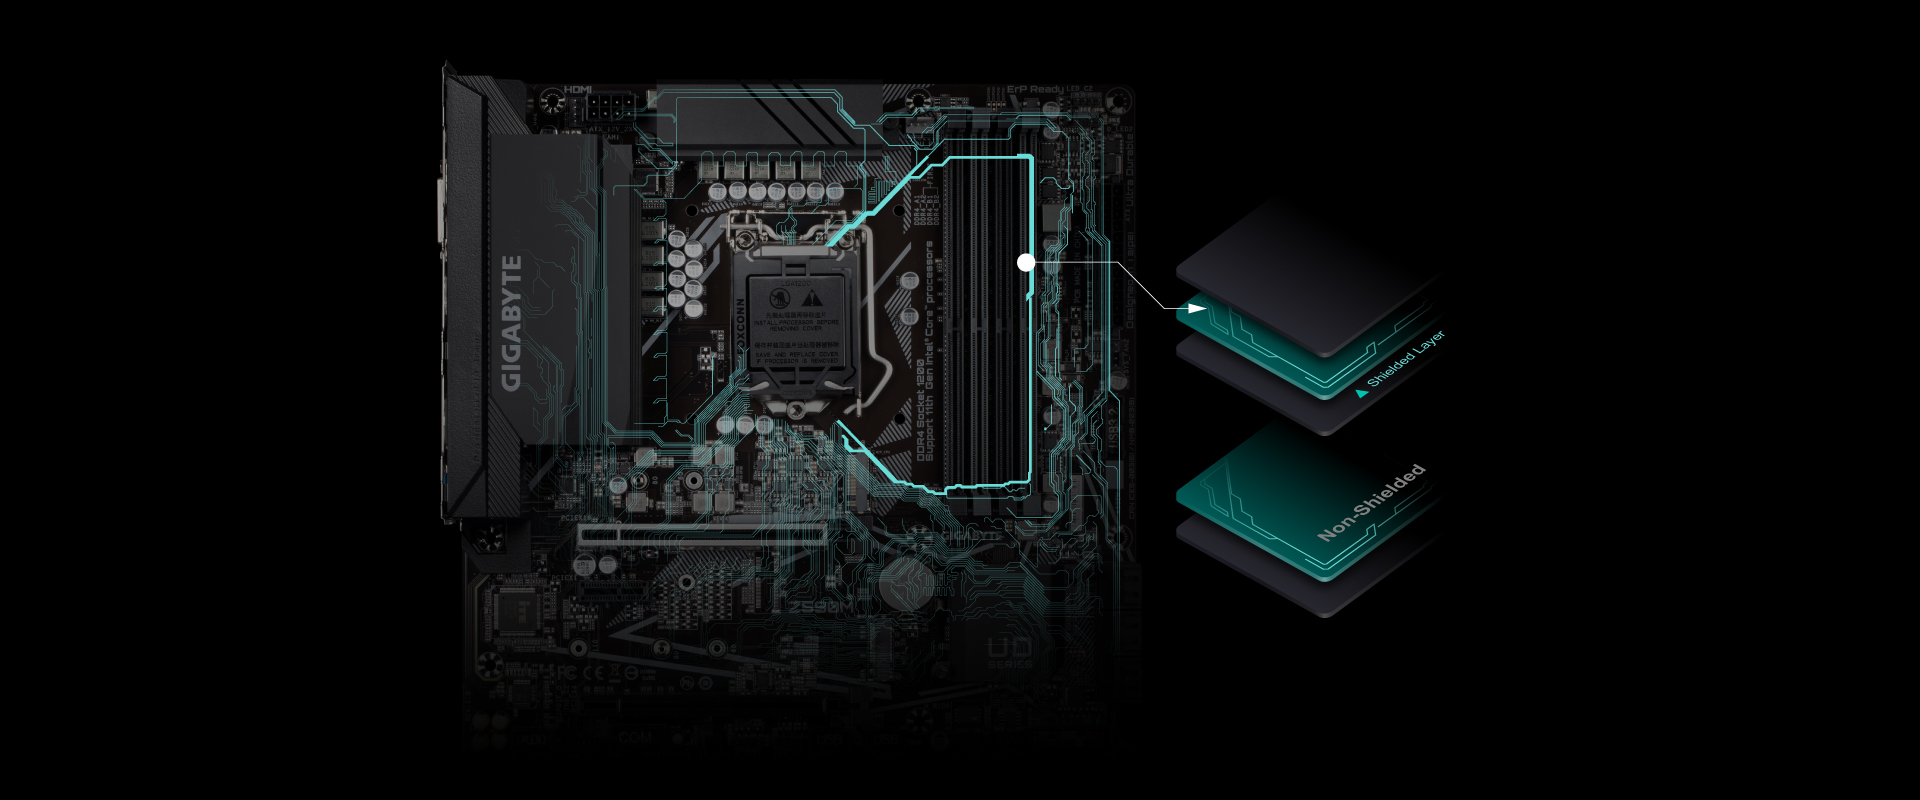 Základnú dosku Gigabyte Z590M podporuje procesory Intel Pentium, Celeron G5xx5 a 10. aj 11. generáciu procesorov Intel Core Series.